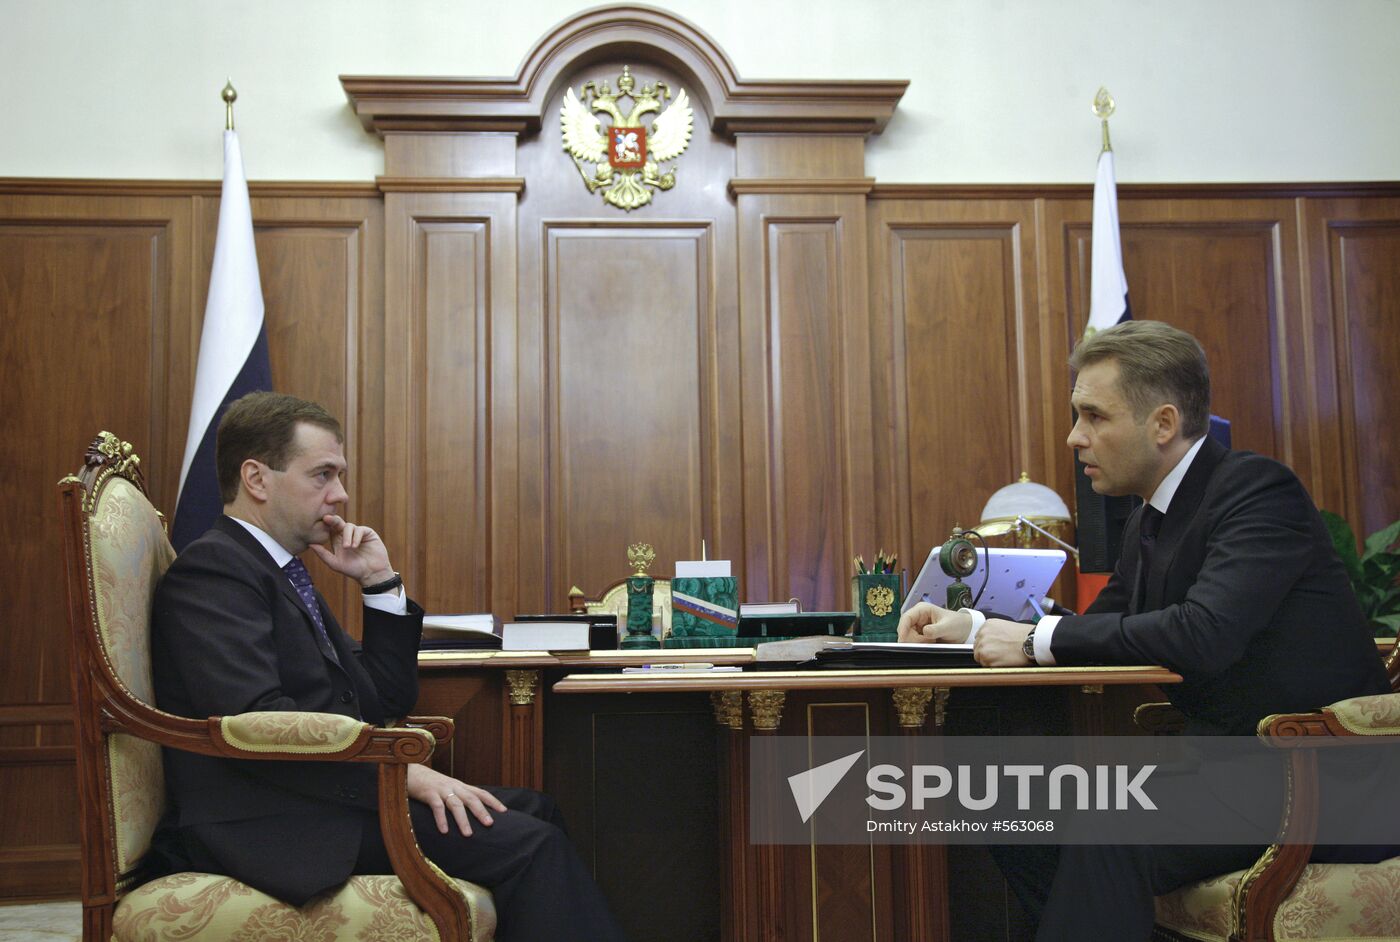 Dmitry Medvedev and Pavel Astakhov